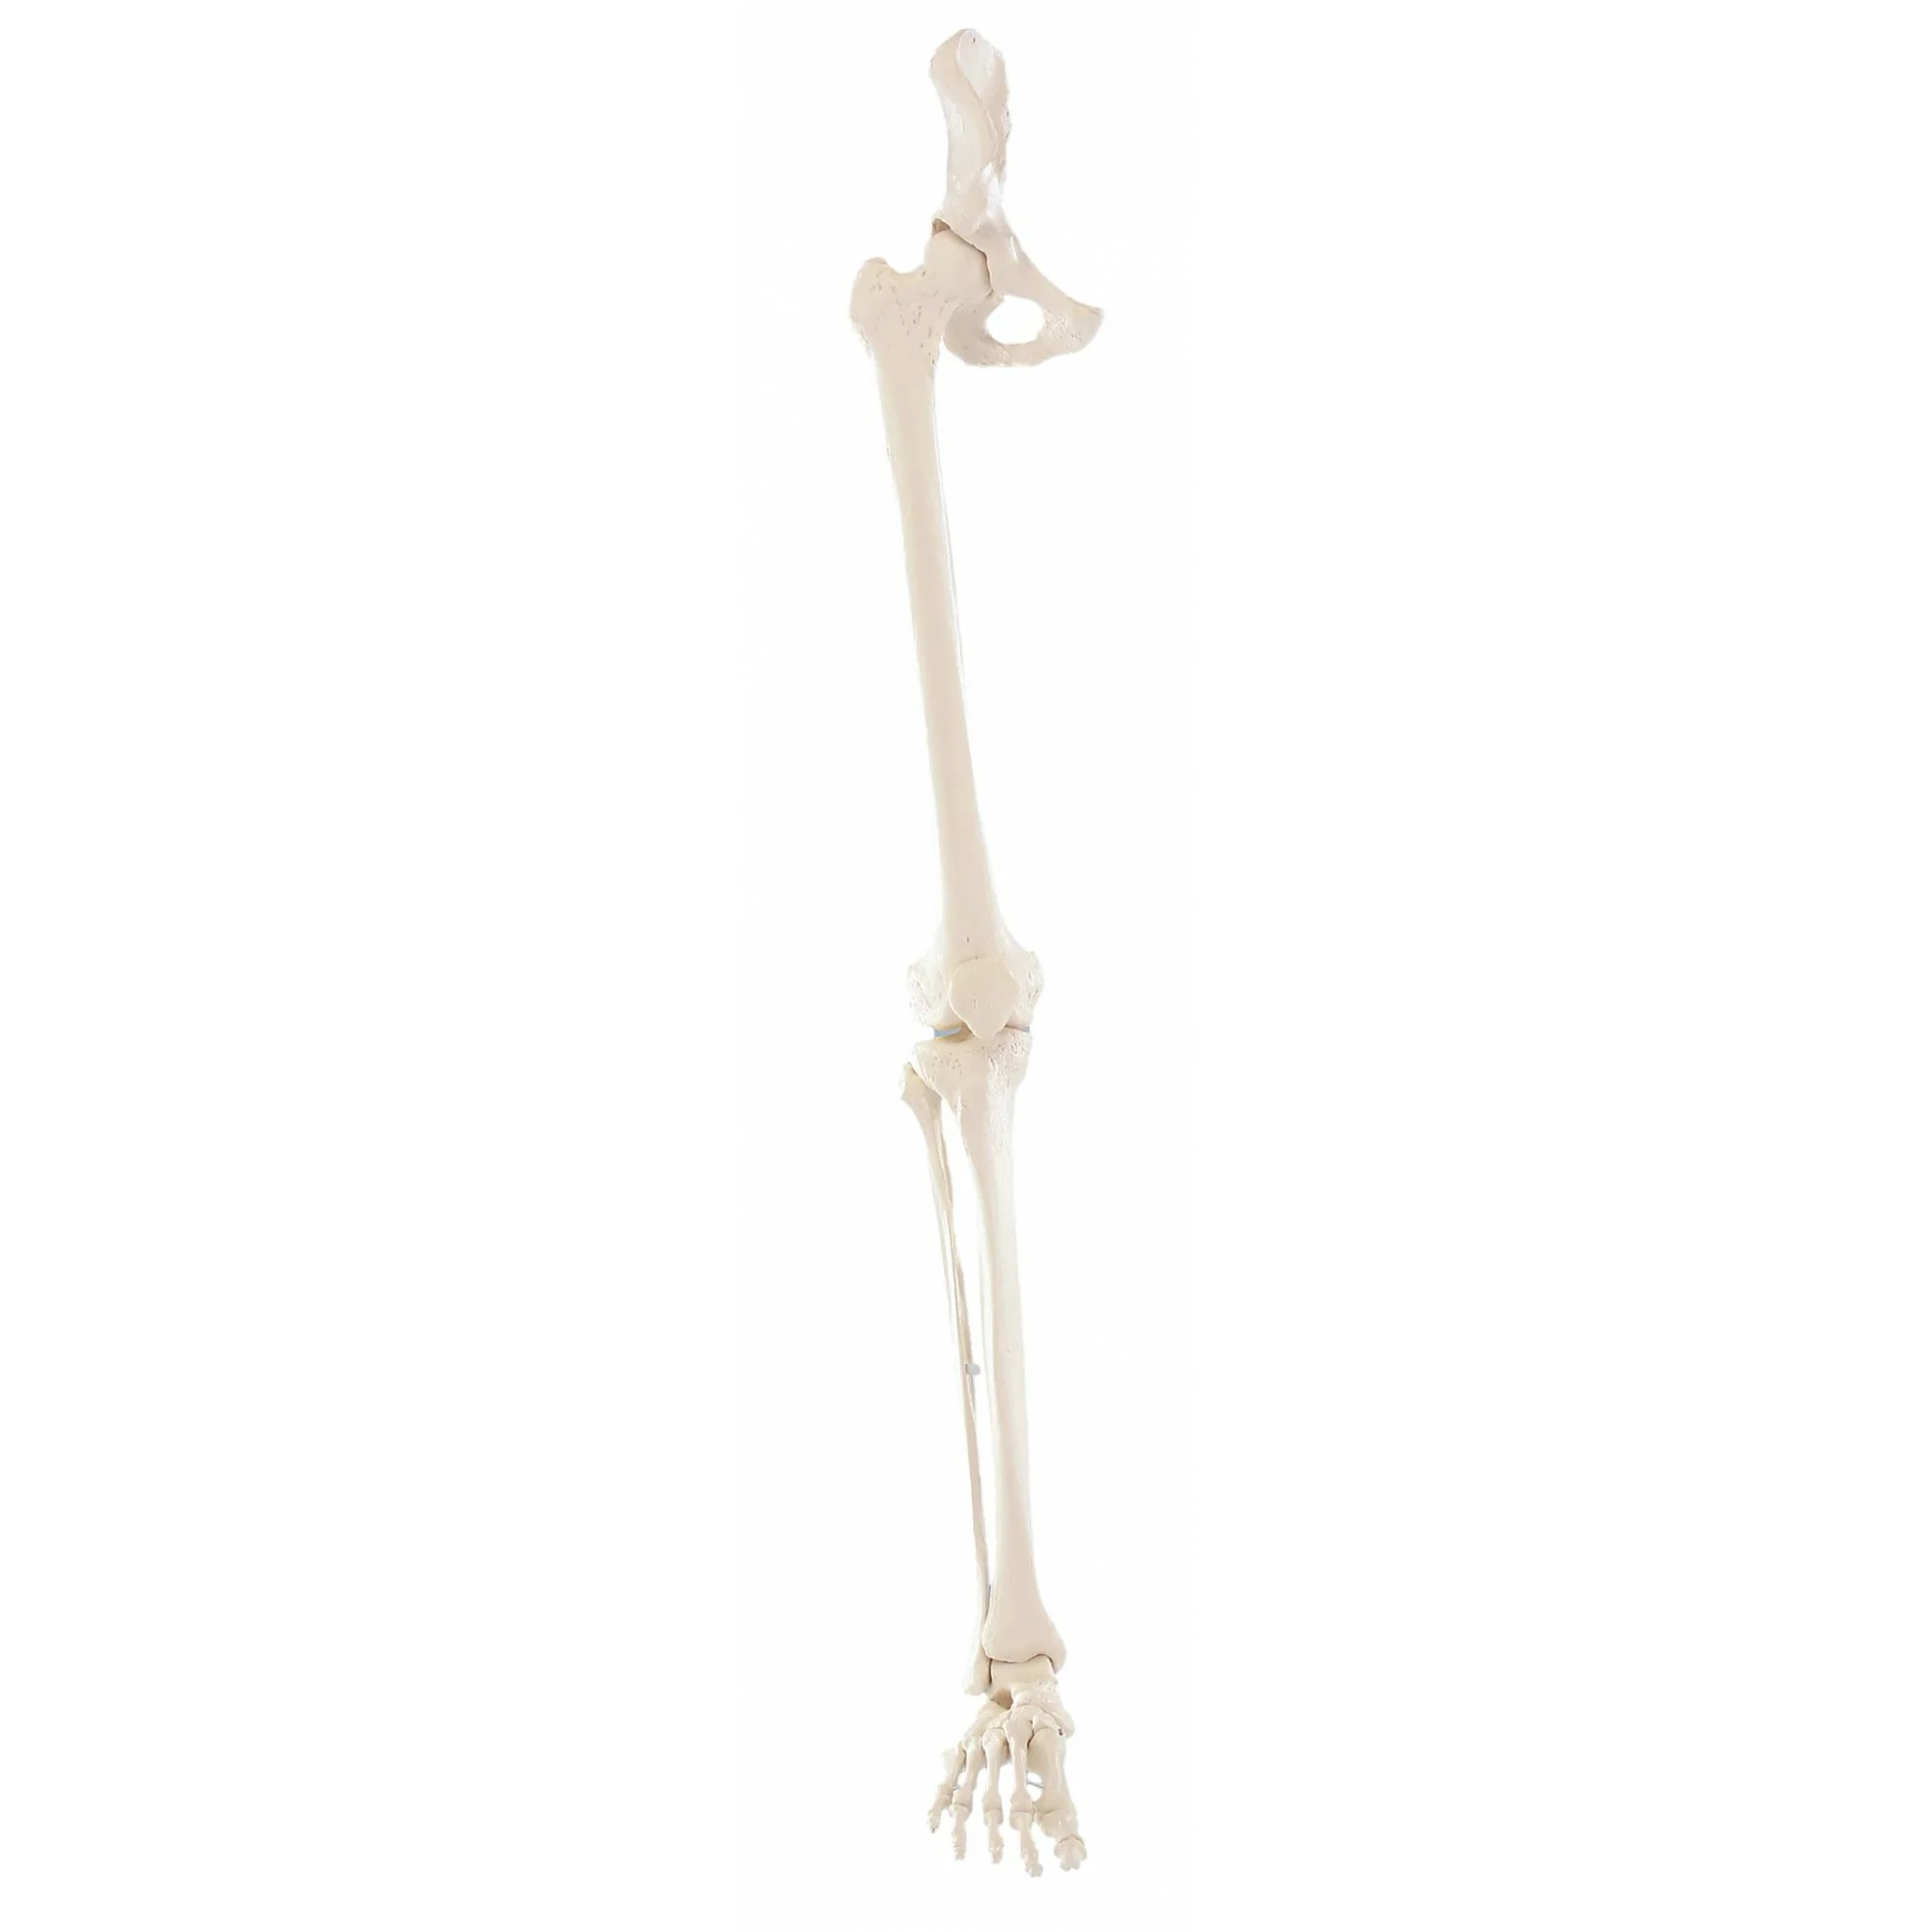 Squelette de la jambe avec moitié du bassin